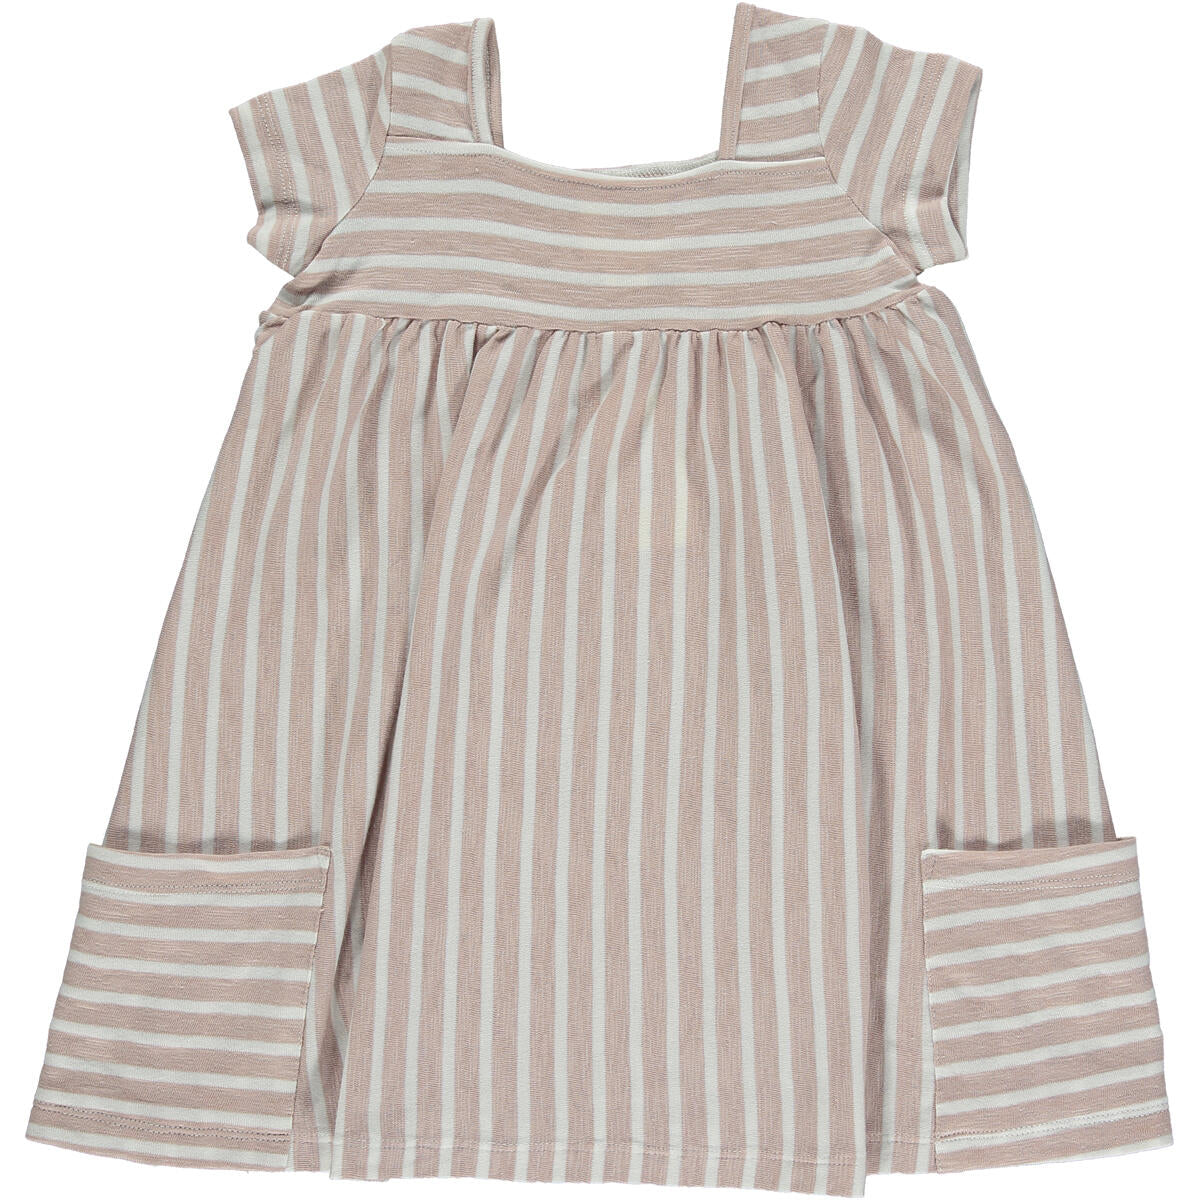 Vignette Rylie Dress - Lavender/Ivory Stripe